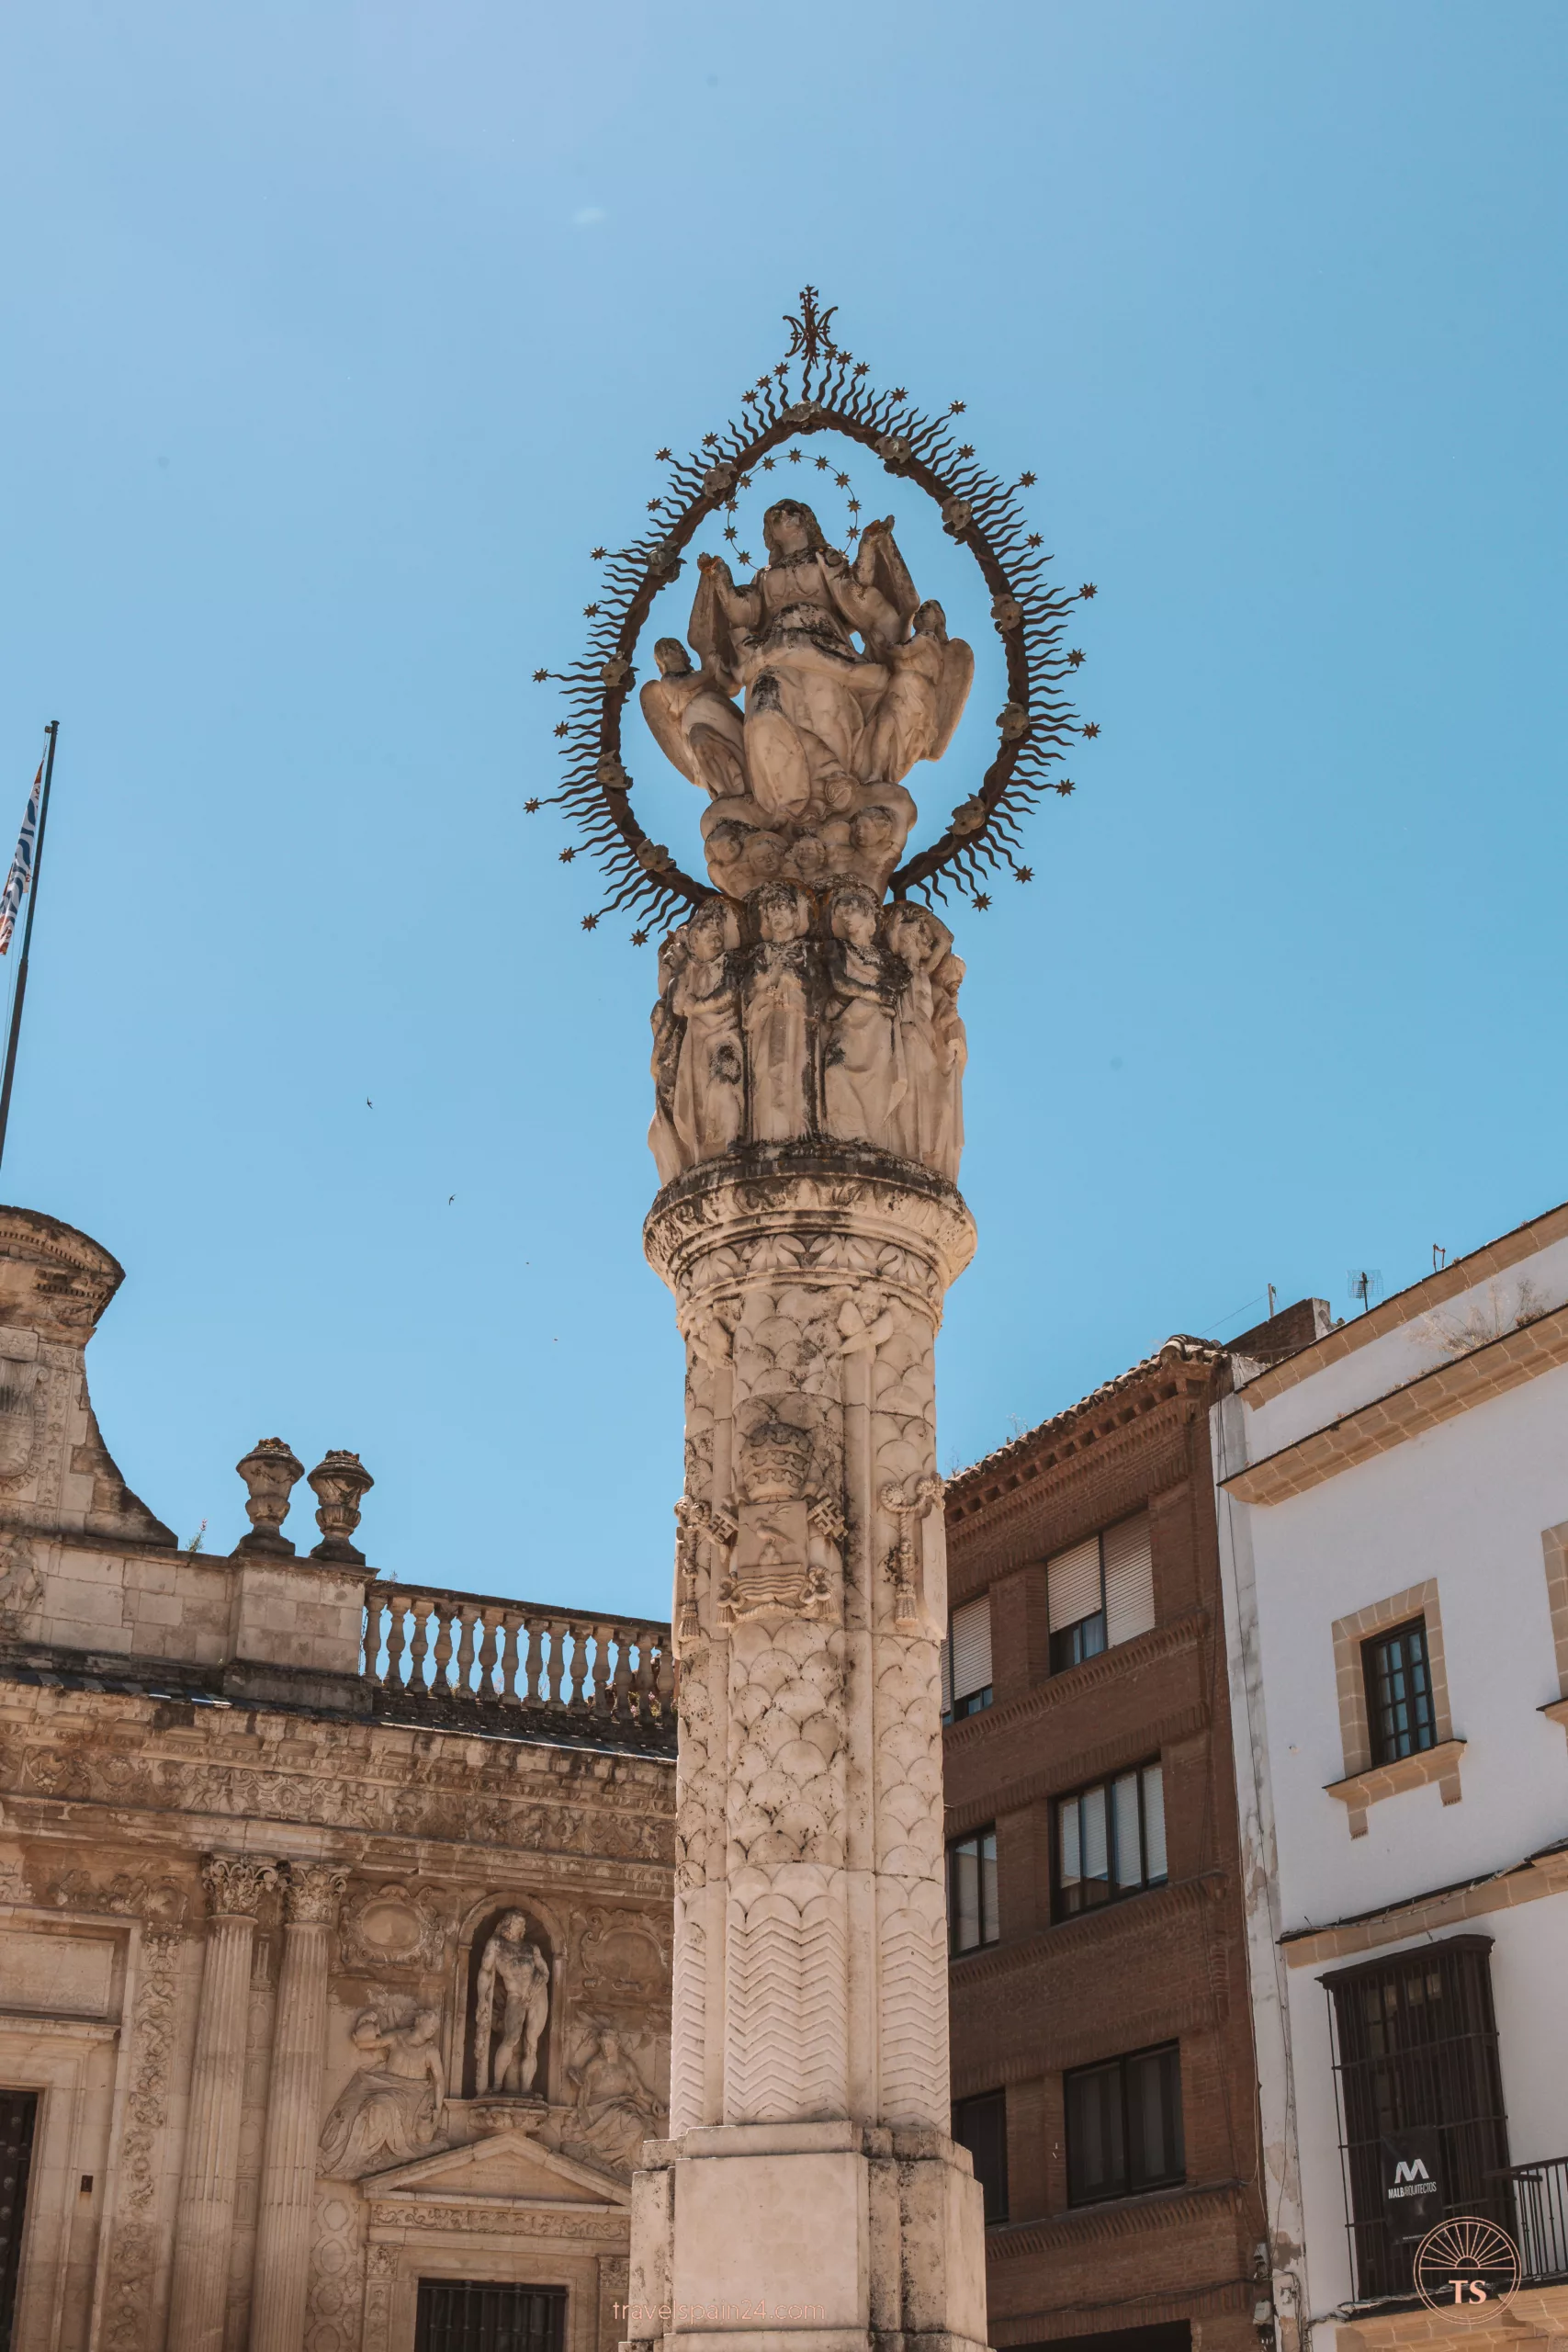 Close-up of the Monumento a la Virgen de la Asunción in Jerez de la Frontera, with the Palacio de la Condesa de Casares in the background. This image highlights a key monument in the city's Plaza de la Asunción.